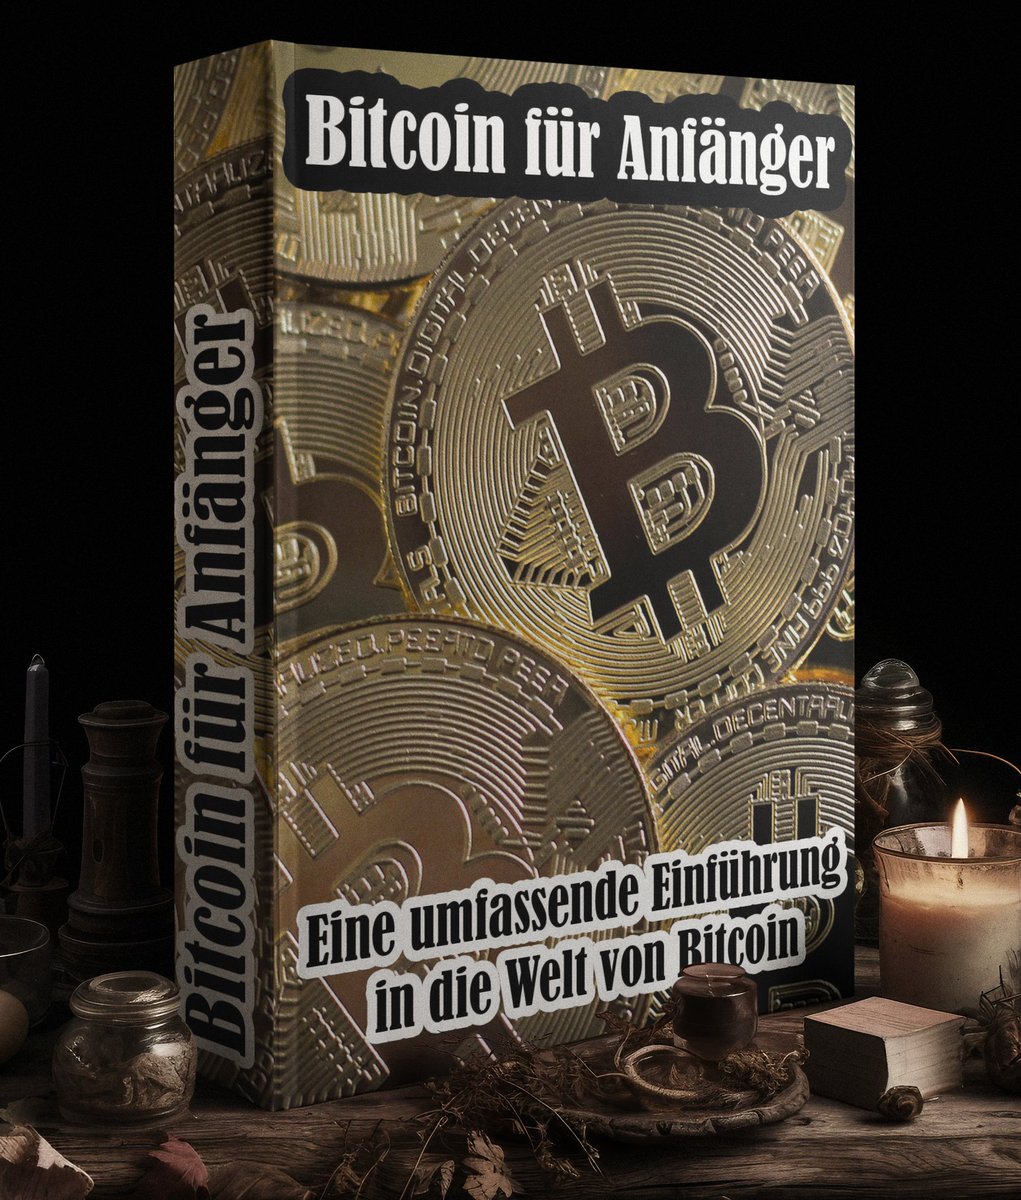 Bitcoin für Anfänger Eine umfassende Einführung in die Welt von Bitcoin 👉🏻 dividende-statt-rente.de/bitcoin-anfaen… #Bitcoin #BTC